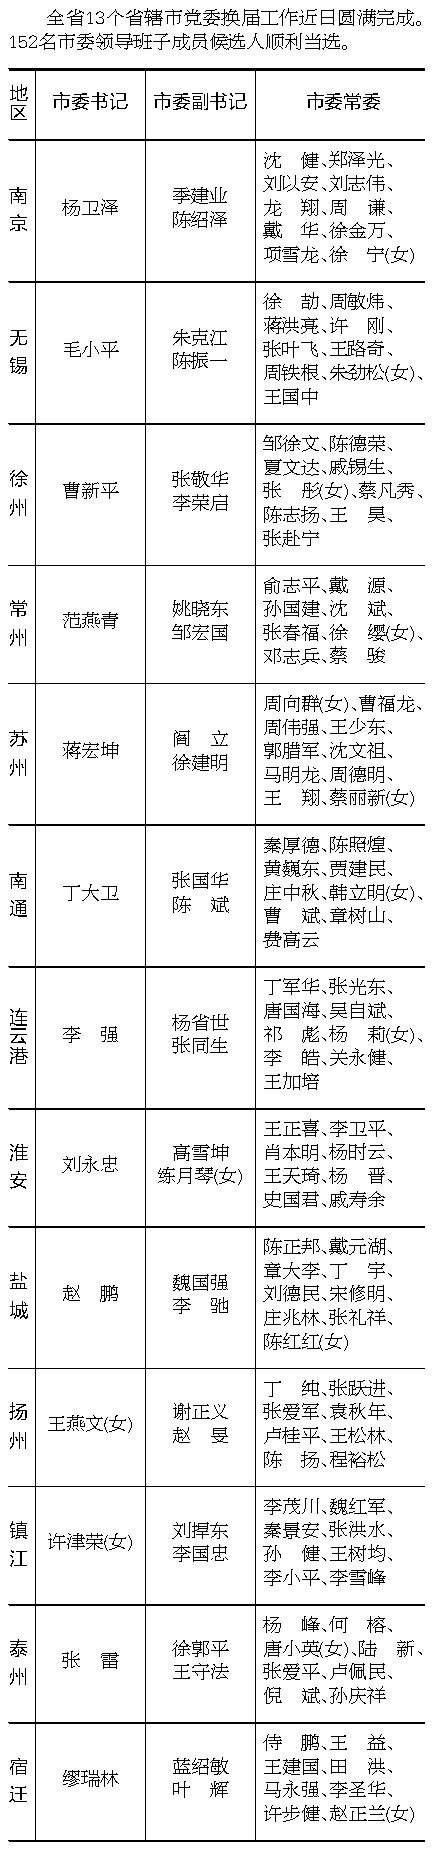 江苏13省辖市党委新一届领导班子成员名单